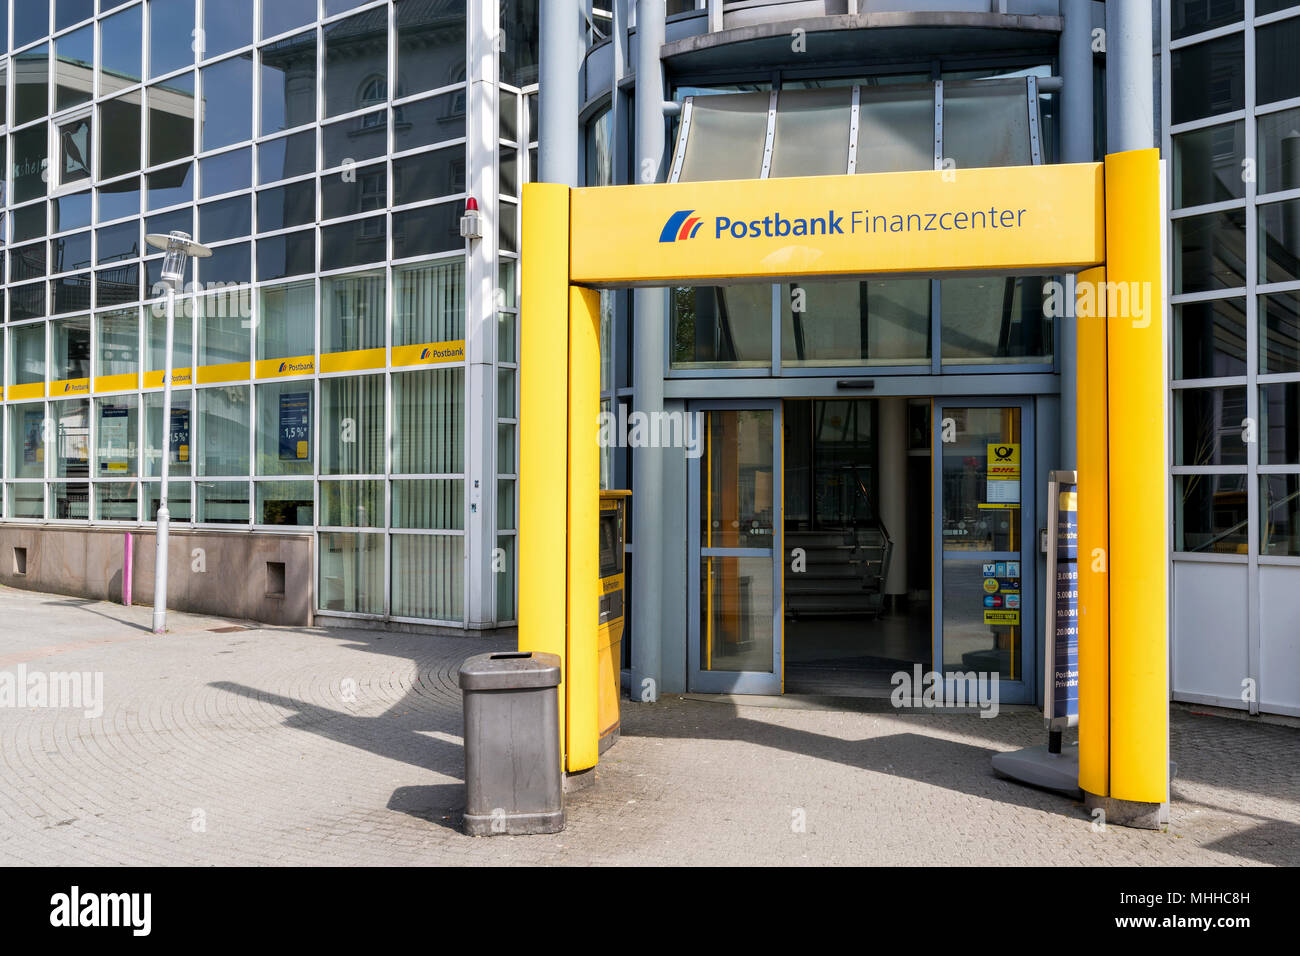 Entrée d'un Finanzcenter Postbank. Deutsche Postbank est une banque de détail allemand dont le siège est à Bonn, en Allemagne. Banque D'Images